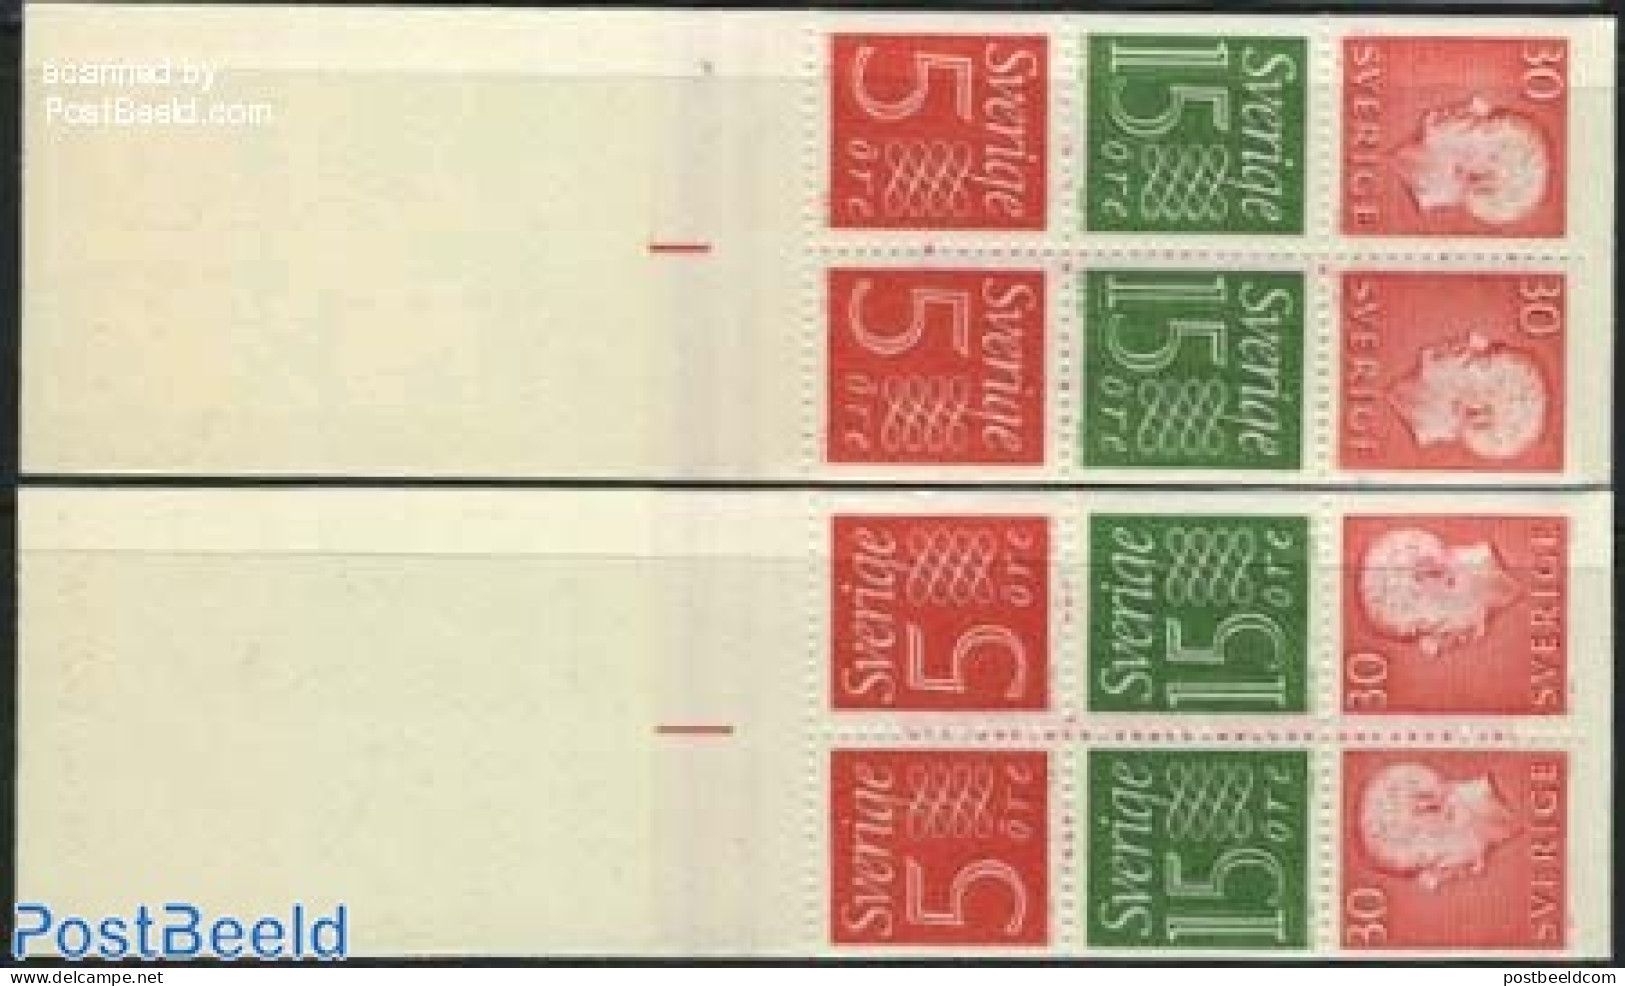 Sweden 1966 Definitives 2 Booklets, Mint NH, Stamp Booklets - Nuovi